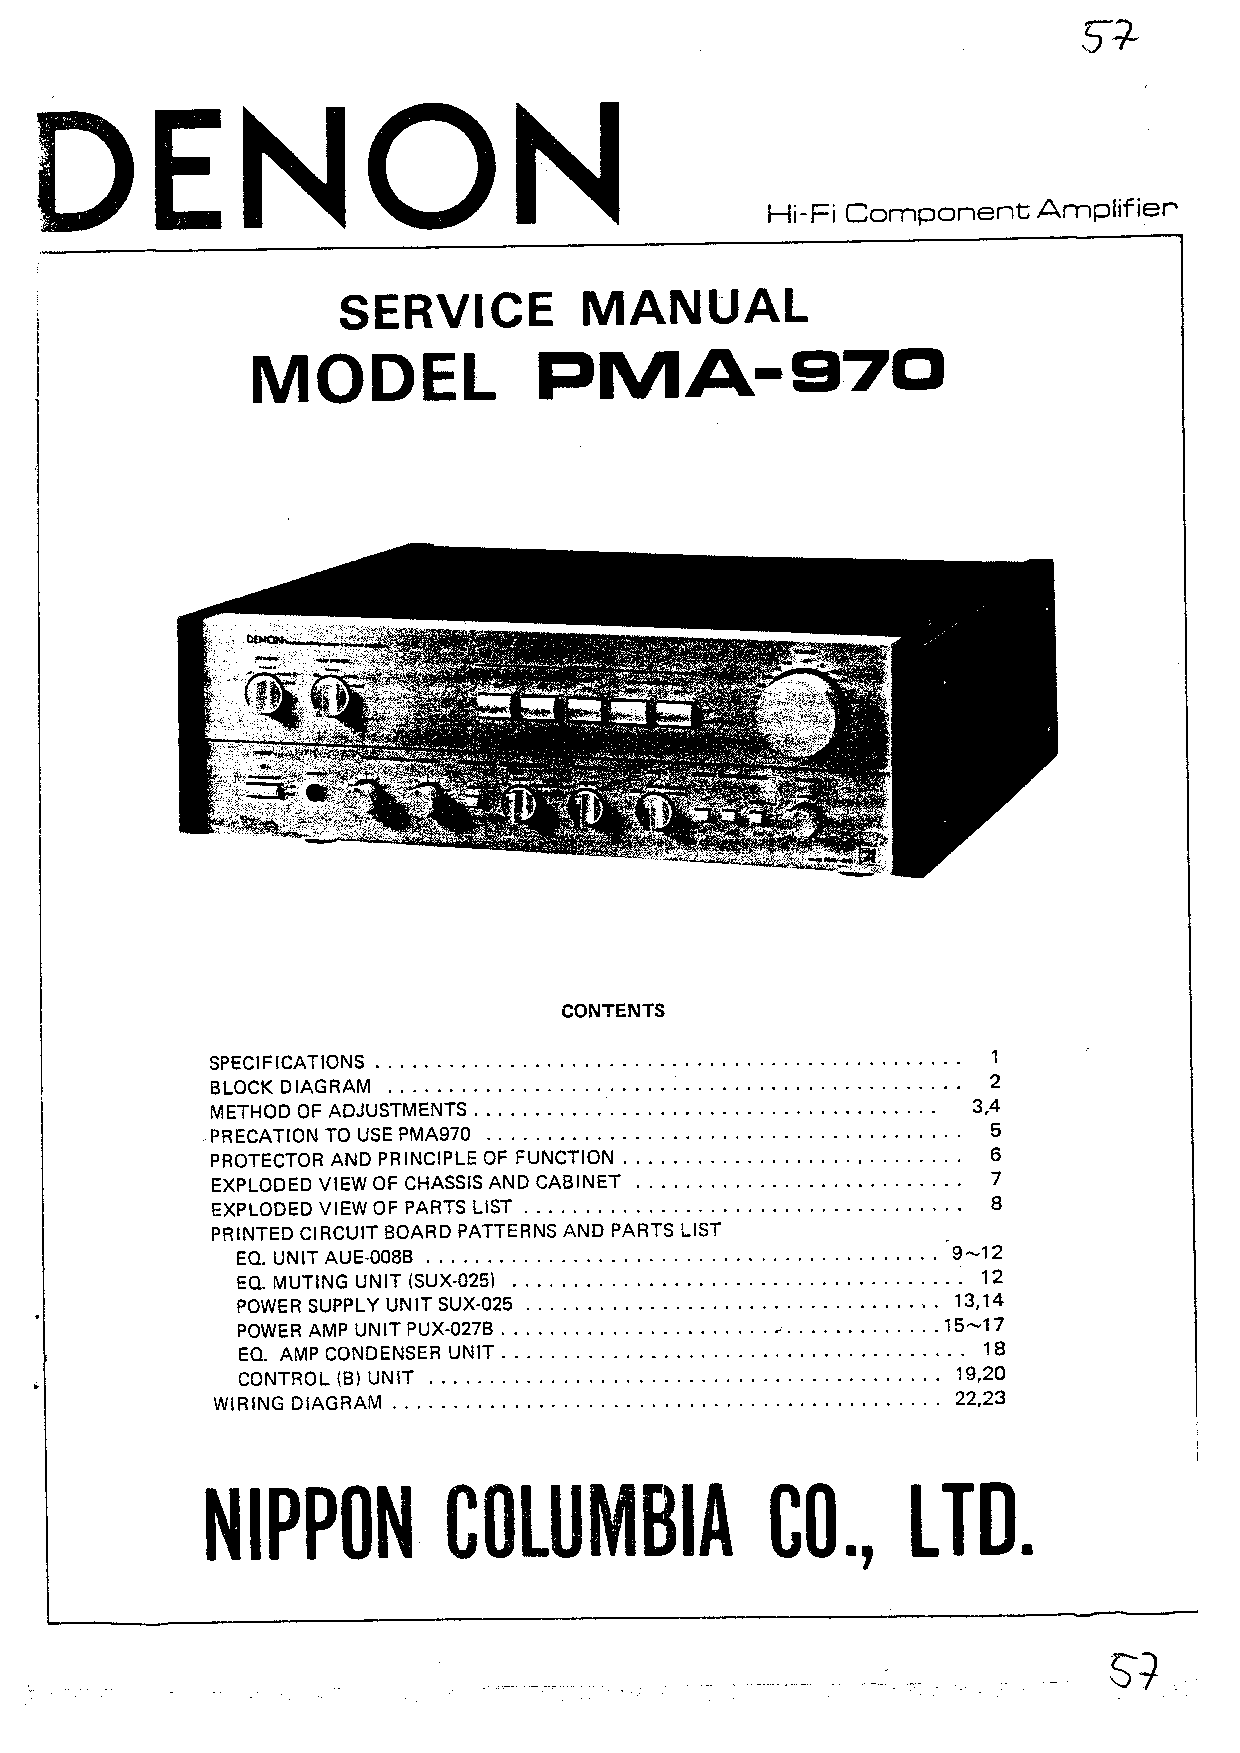 Denon PMA-970 Service Manual